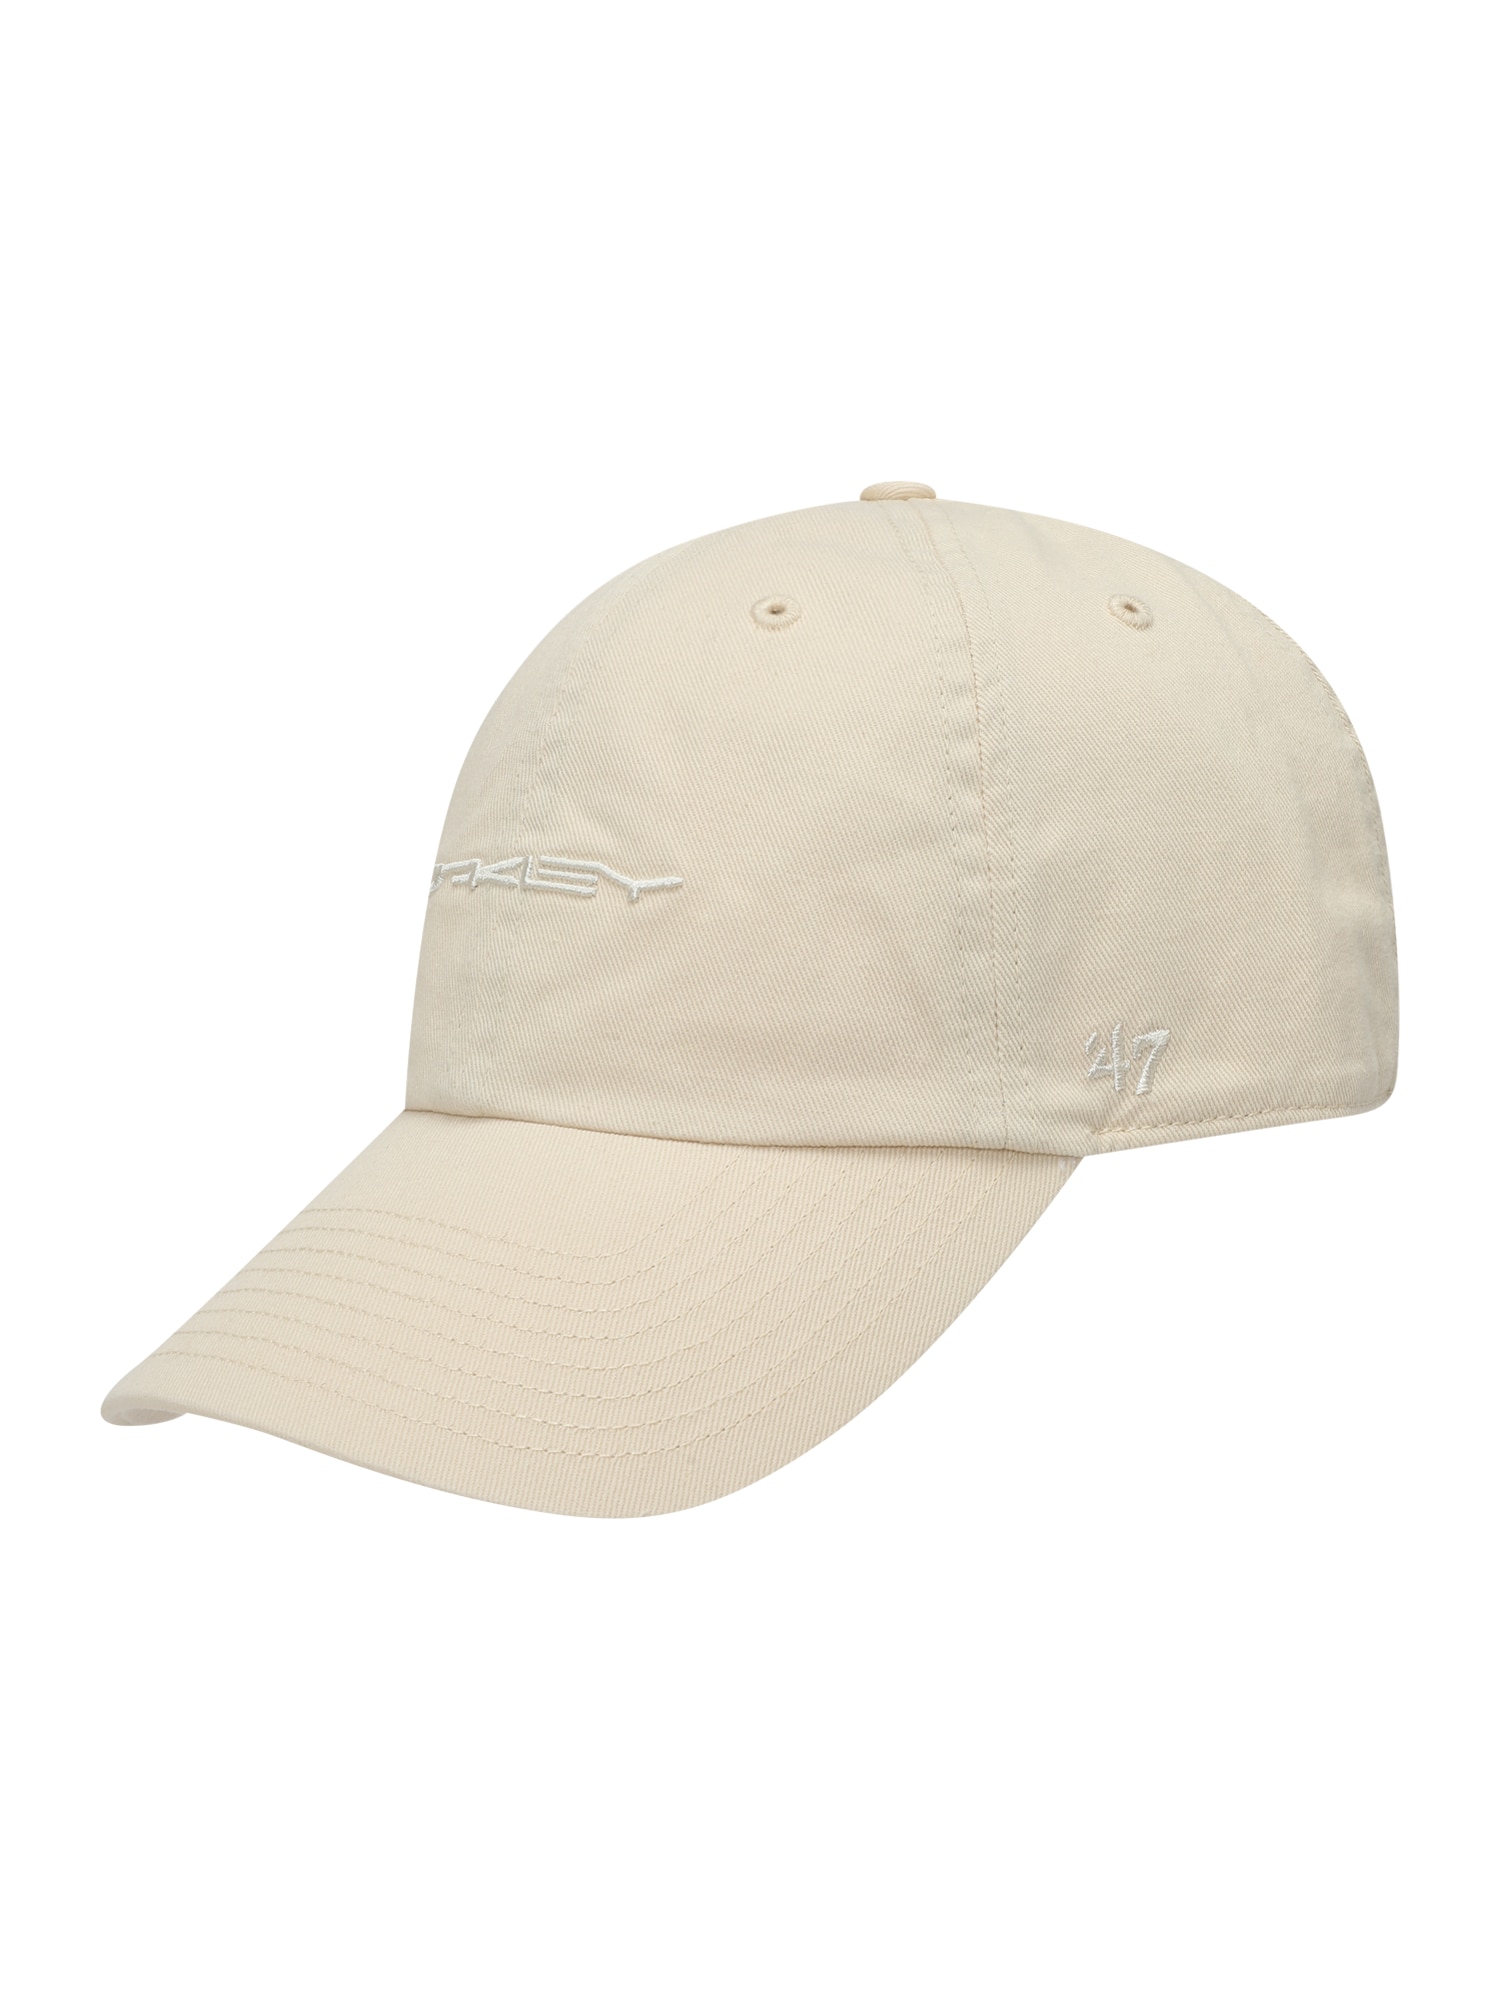 OAKLEY Sportinė kepurė '47 SOHO' vilnos balta